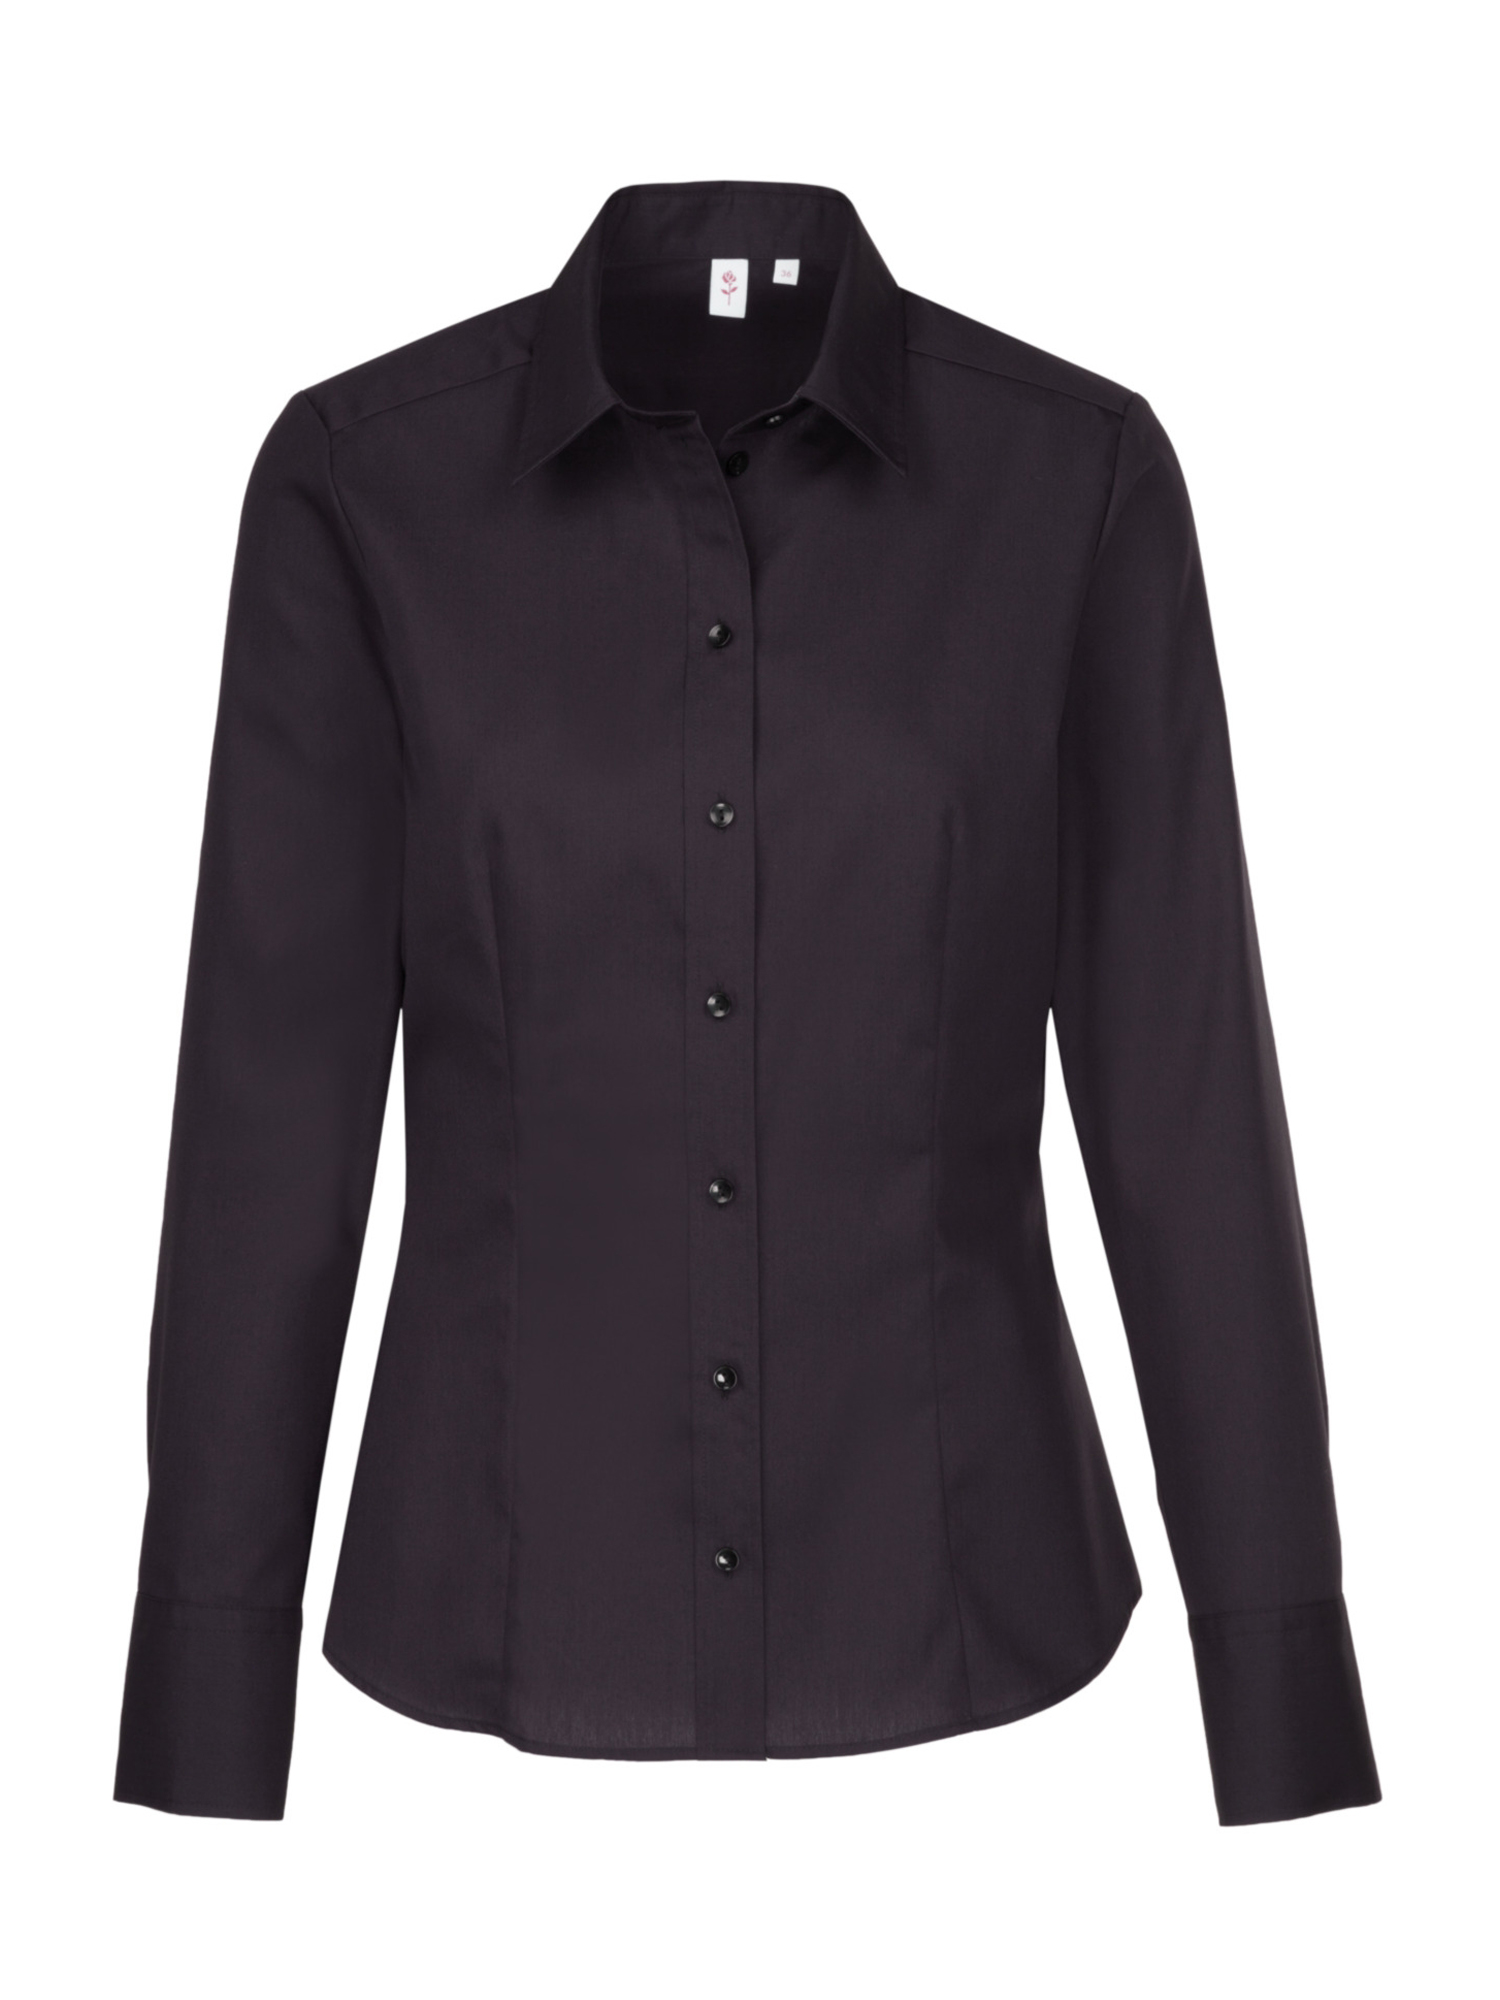 Kobiety Biznes SEIDENSTICKER Bluzka w kolorze Czarnym 